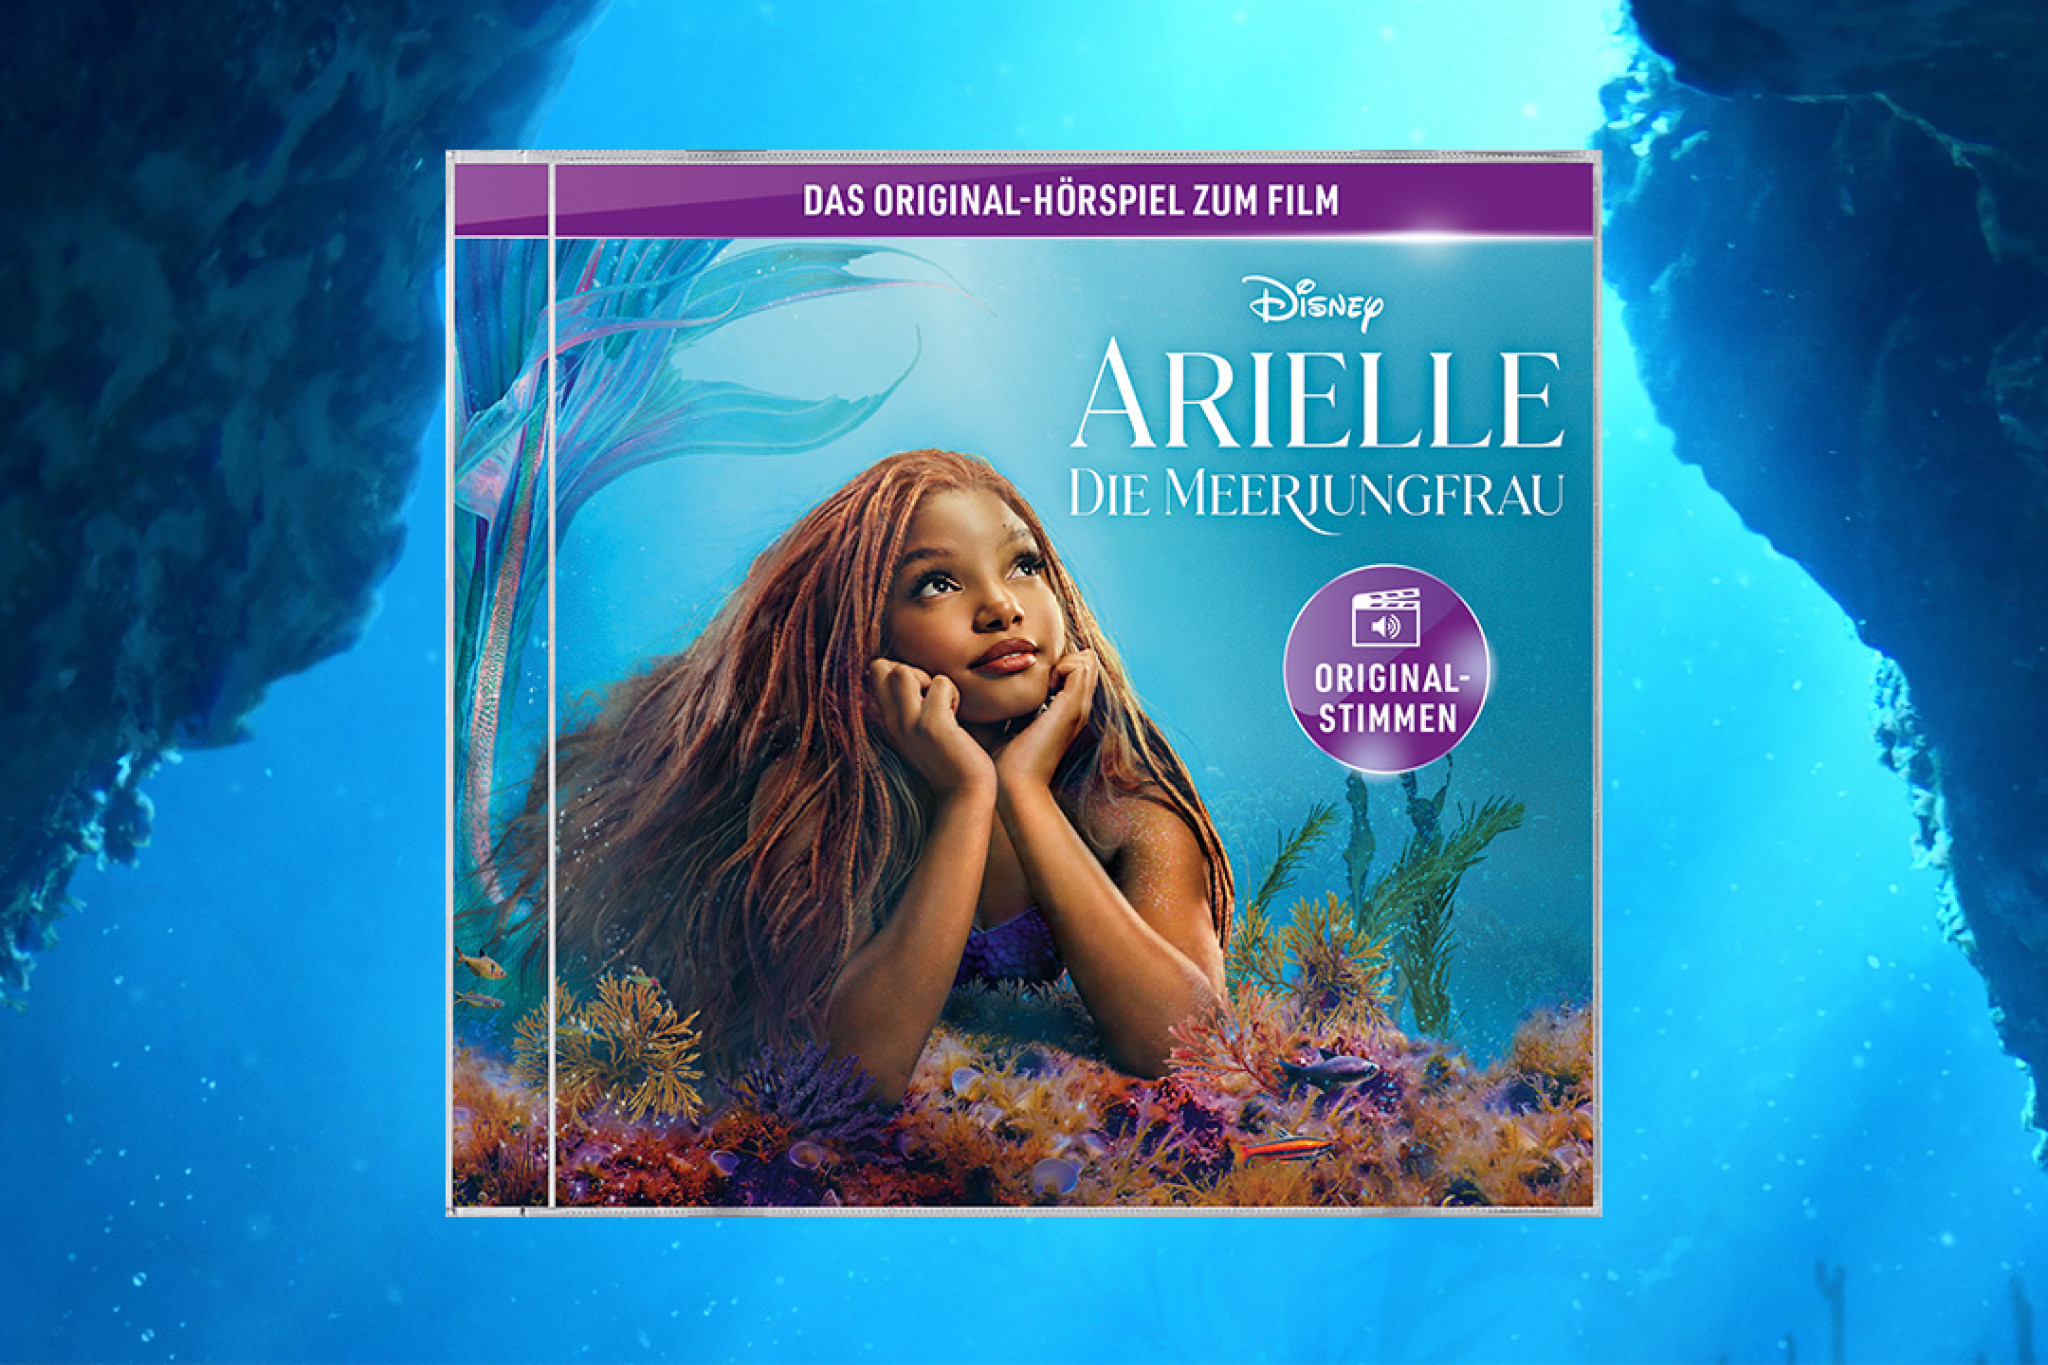 Disneys Hörspiel aus dem aktuellen Kinofilm "Arielle die Meerjungfrau" jetzt überall auf CD!